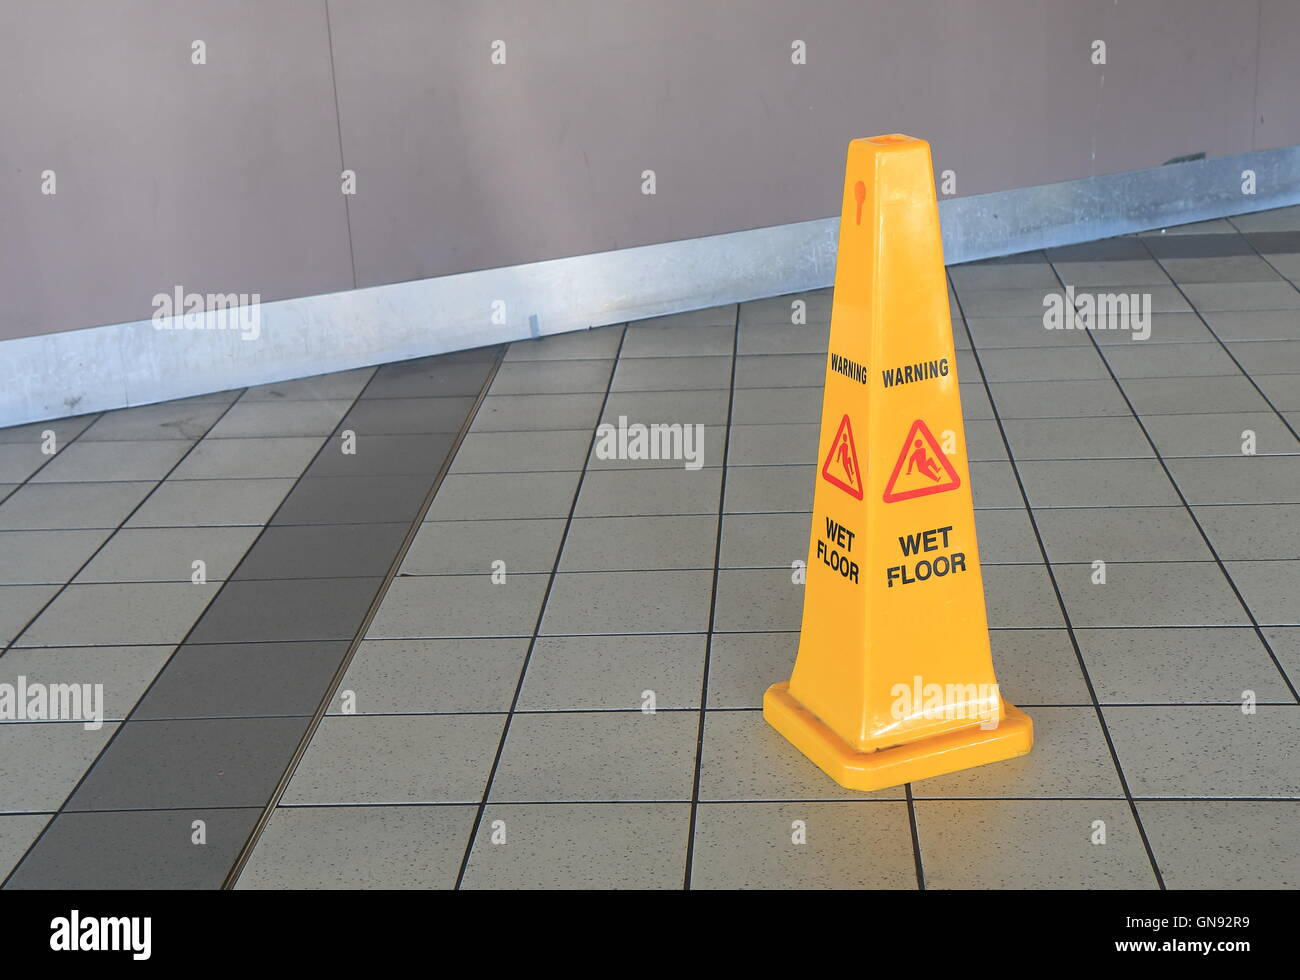 Wet floor sign Stock Photo